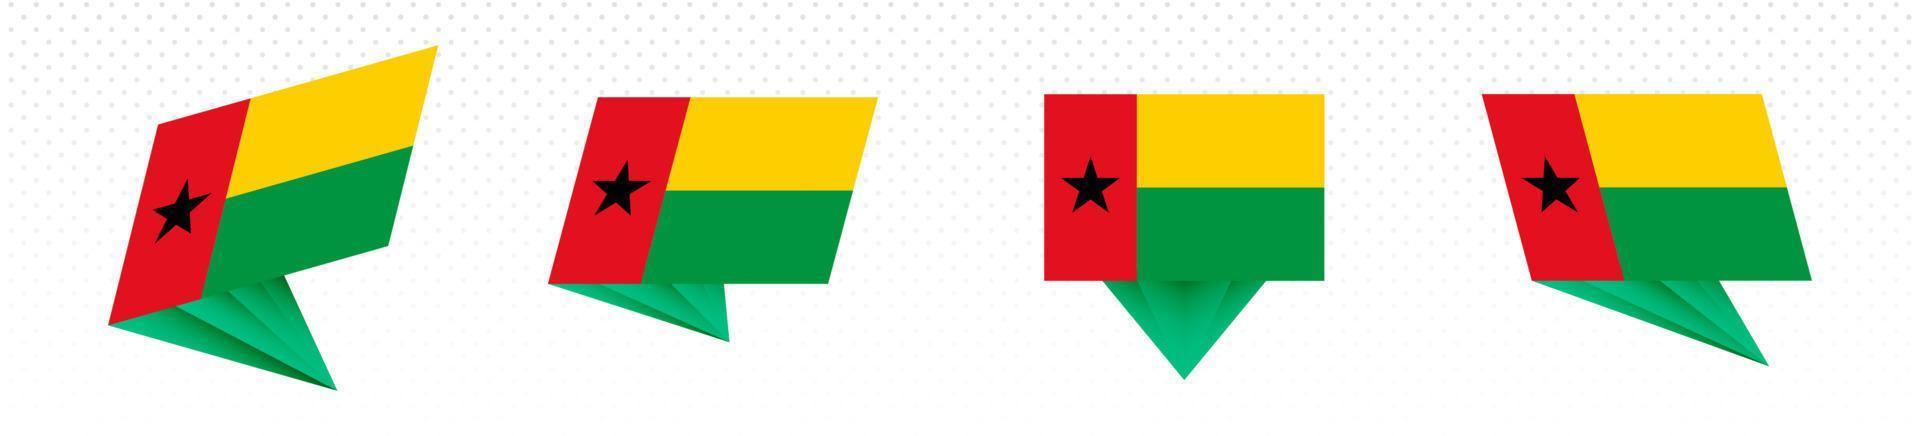 flagga av guinea-bissau i modern abstrakt design, flagga uppsättning. vektor